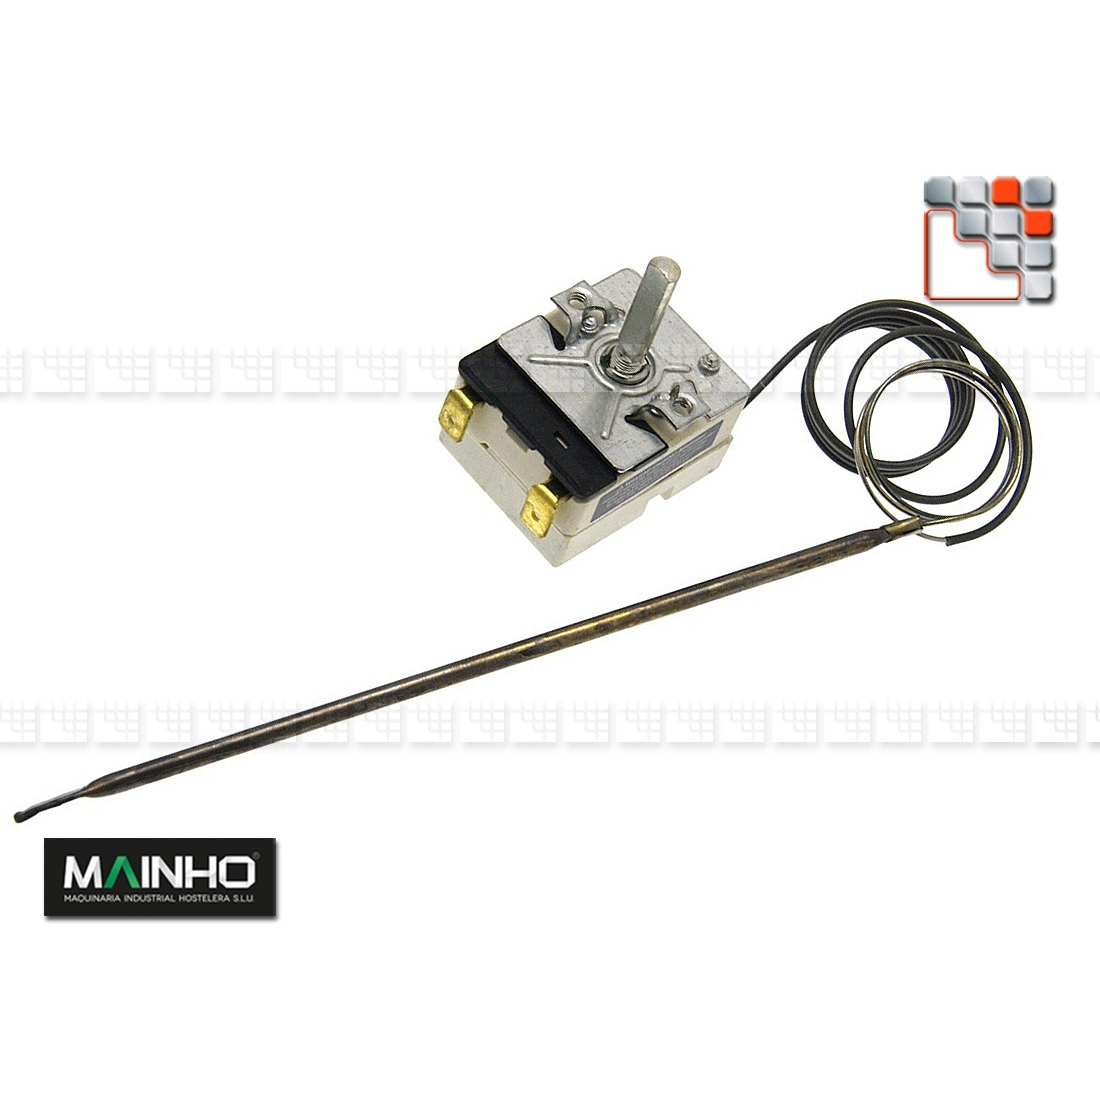 Thermostatic Regulator 320°C 16A MAINHO M36-02080000008 MAINHO SAV - Accessoires Electric spare parts MAINHO